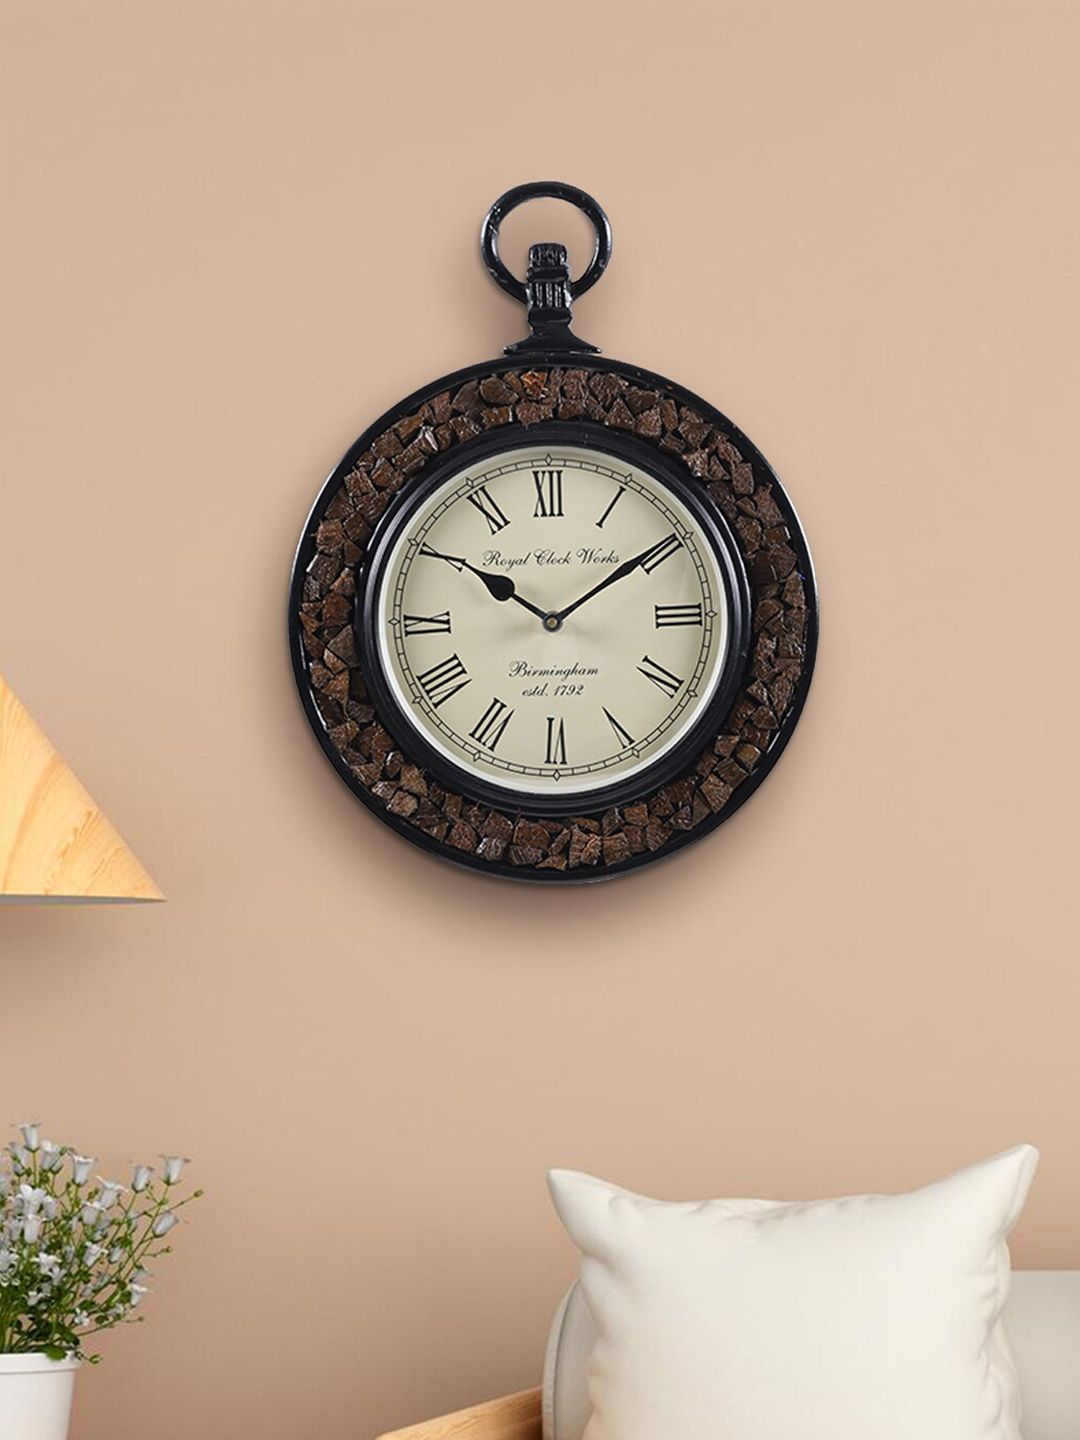 Aapno Rajasthan Brown Textured Vintage Wall Clock Price in India